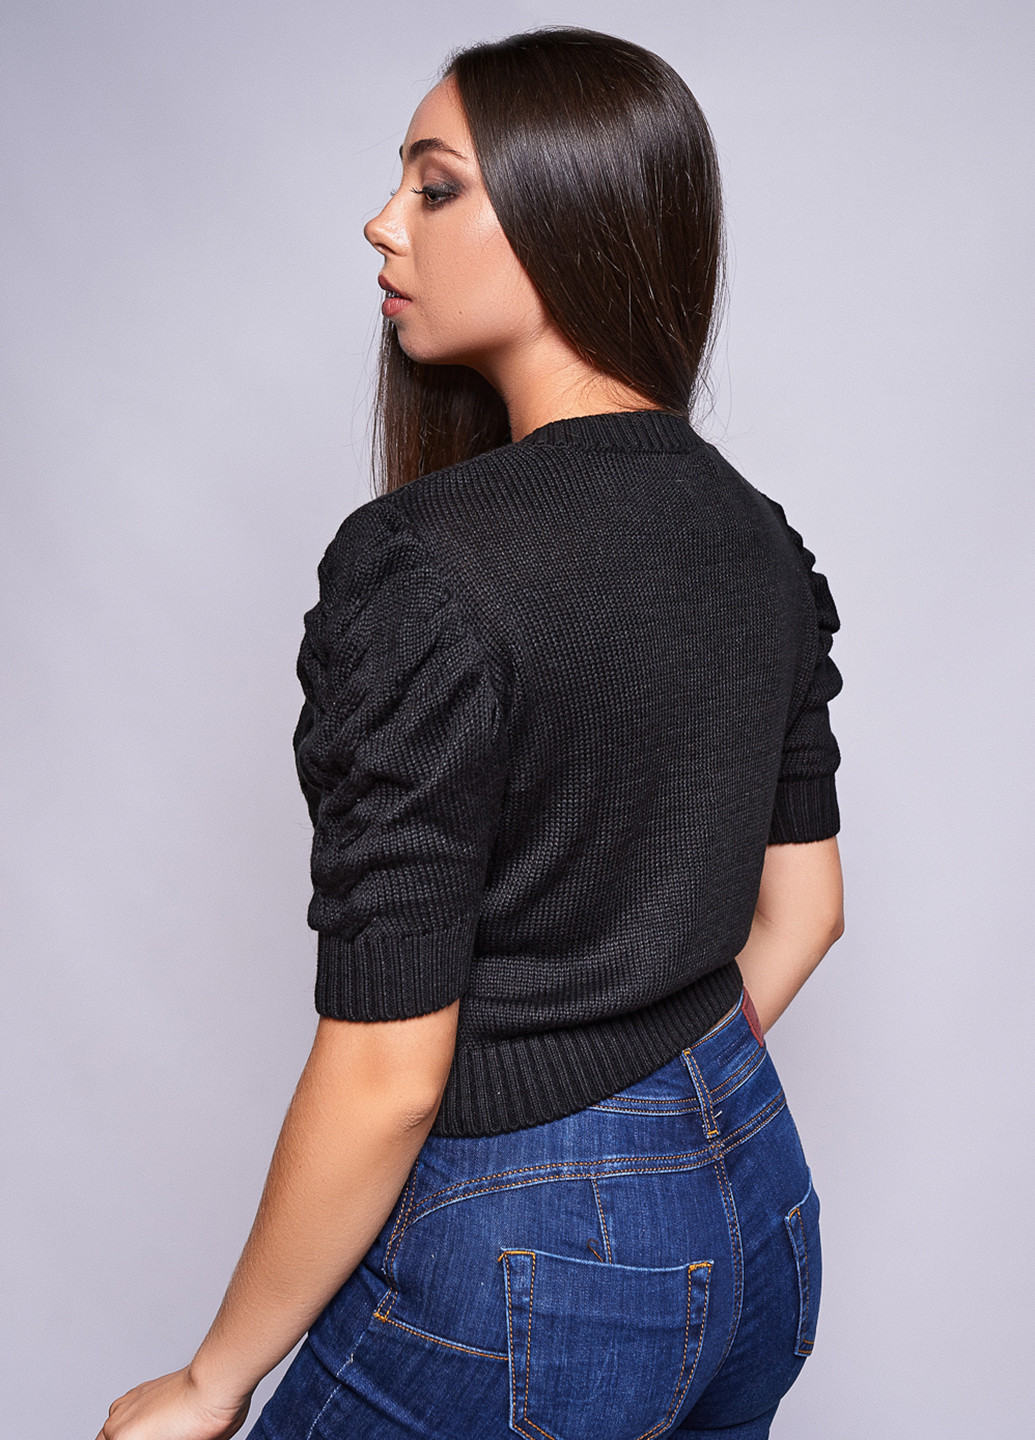 Черный демисезонный пуловер пуловер Madoc Jeans